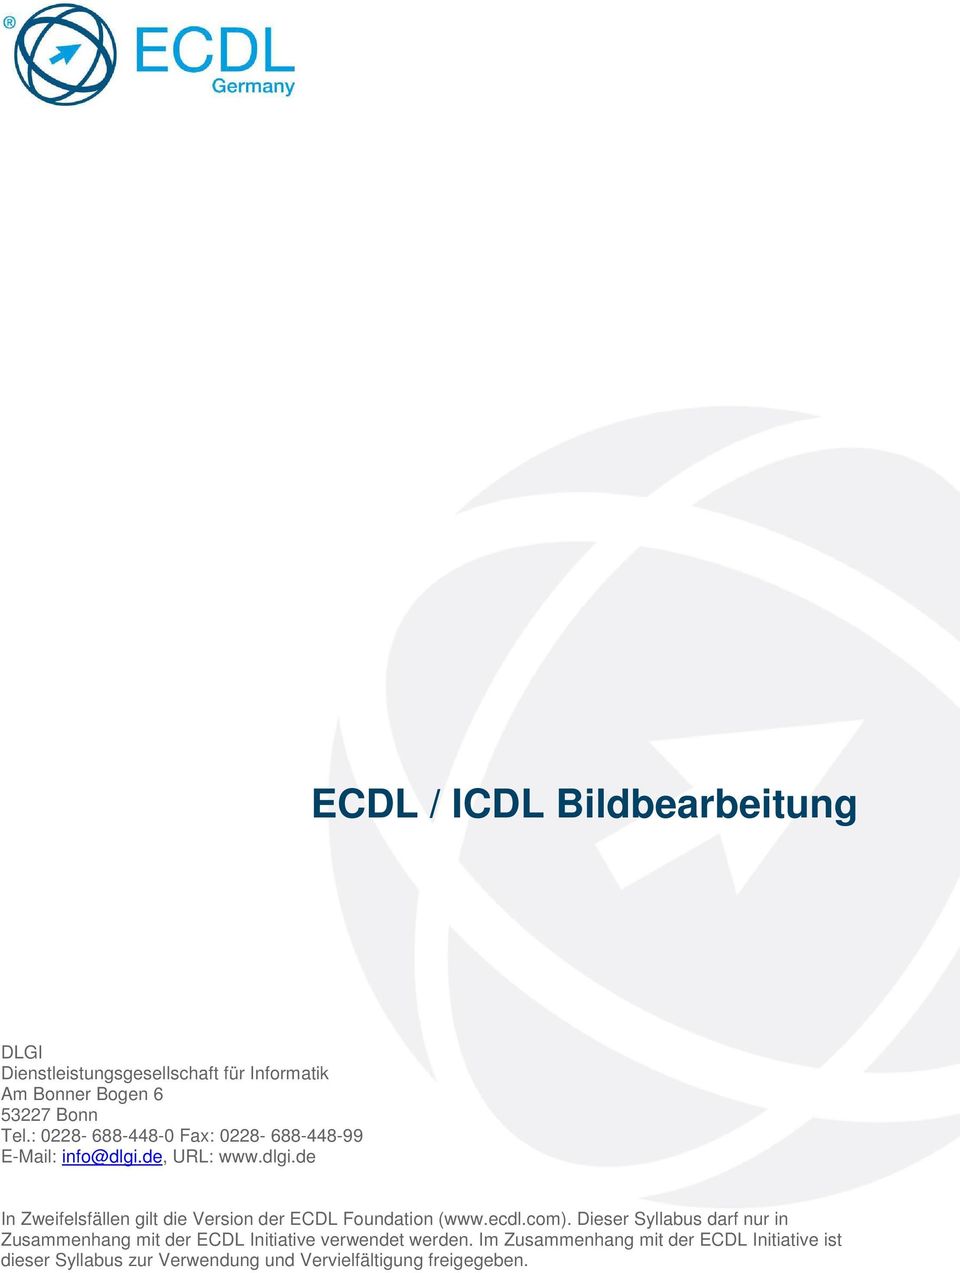 de, URL: www.dlgi.de In Zweifelsfällen gilt die Version der ECDL Foundation (www.ecdl.com).